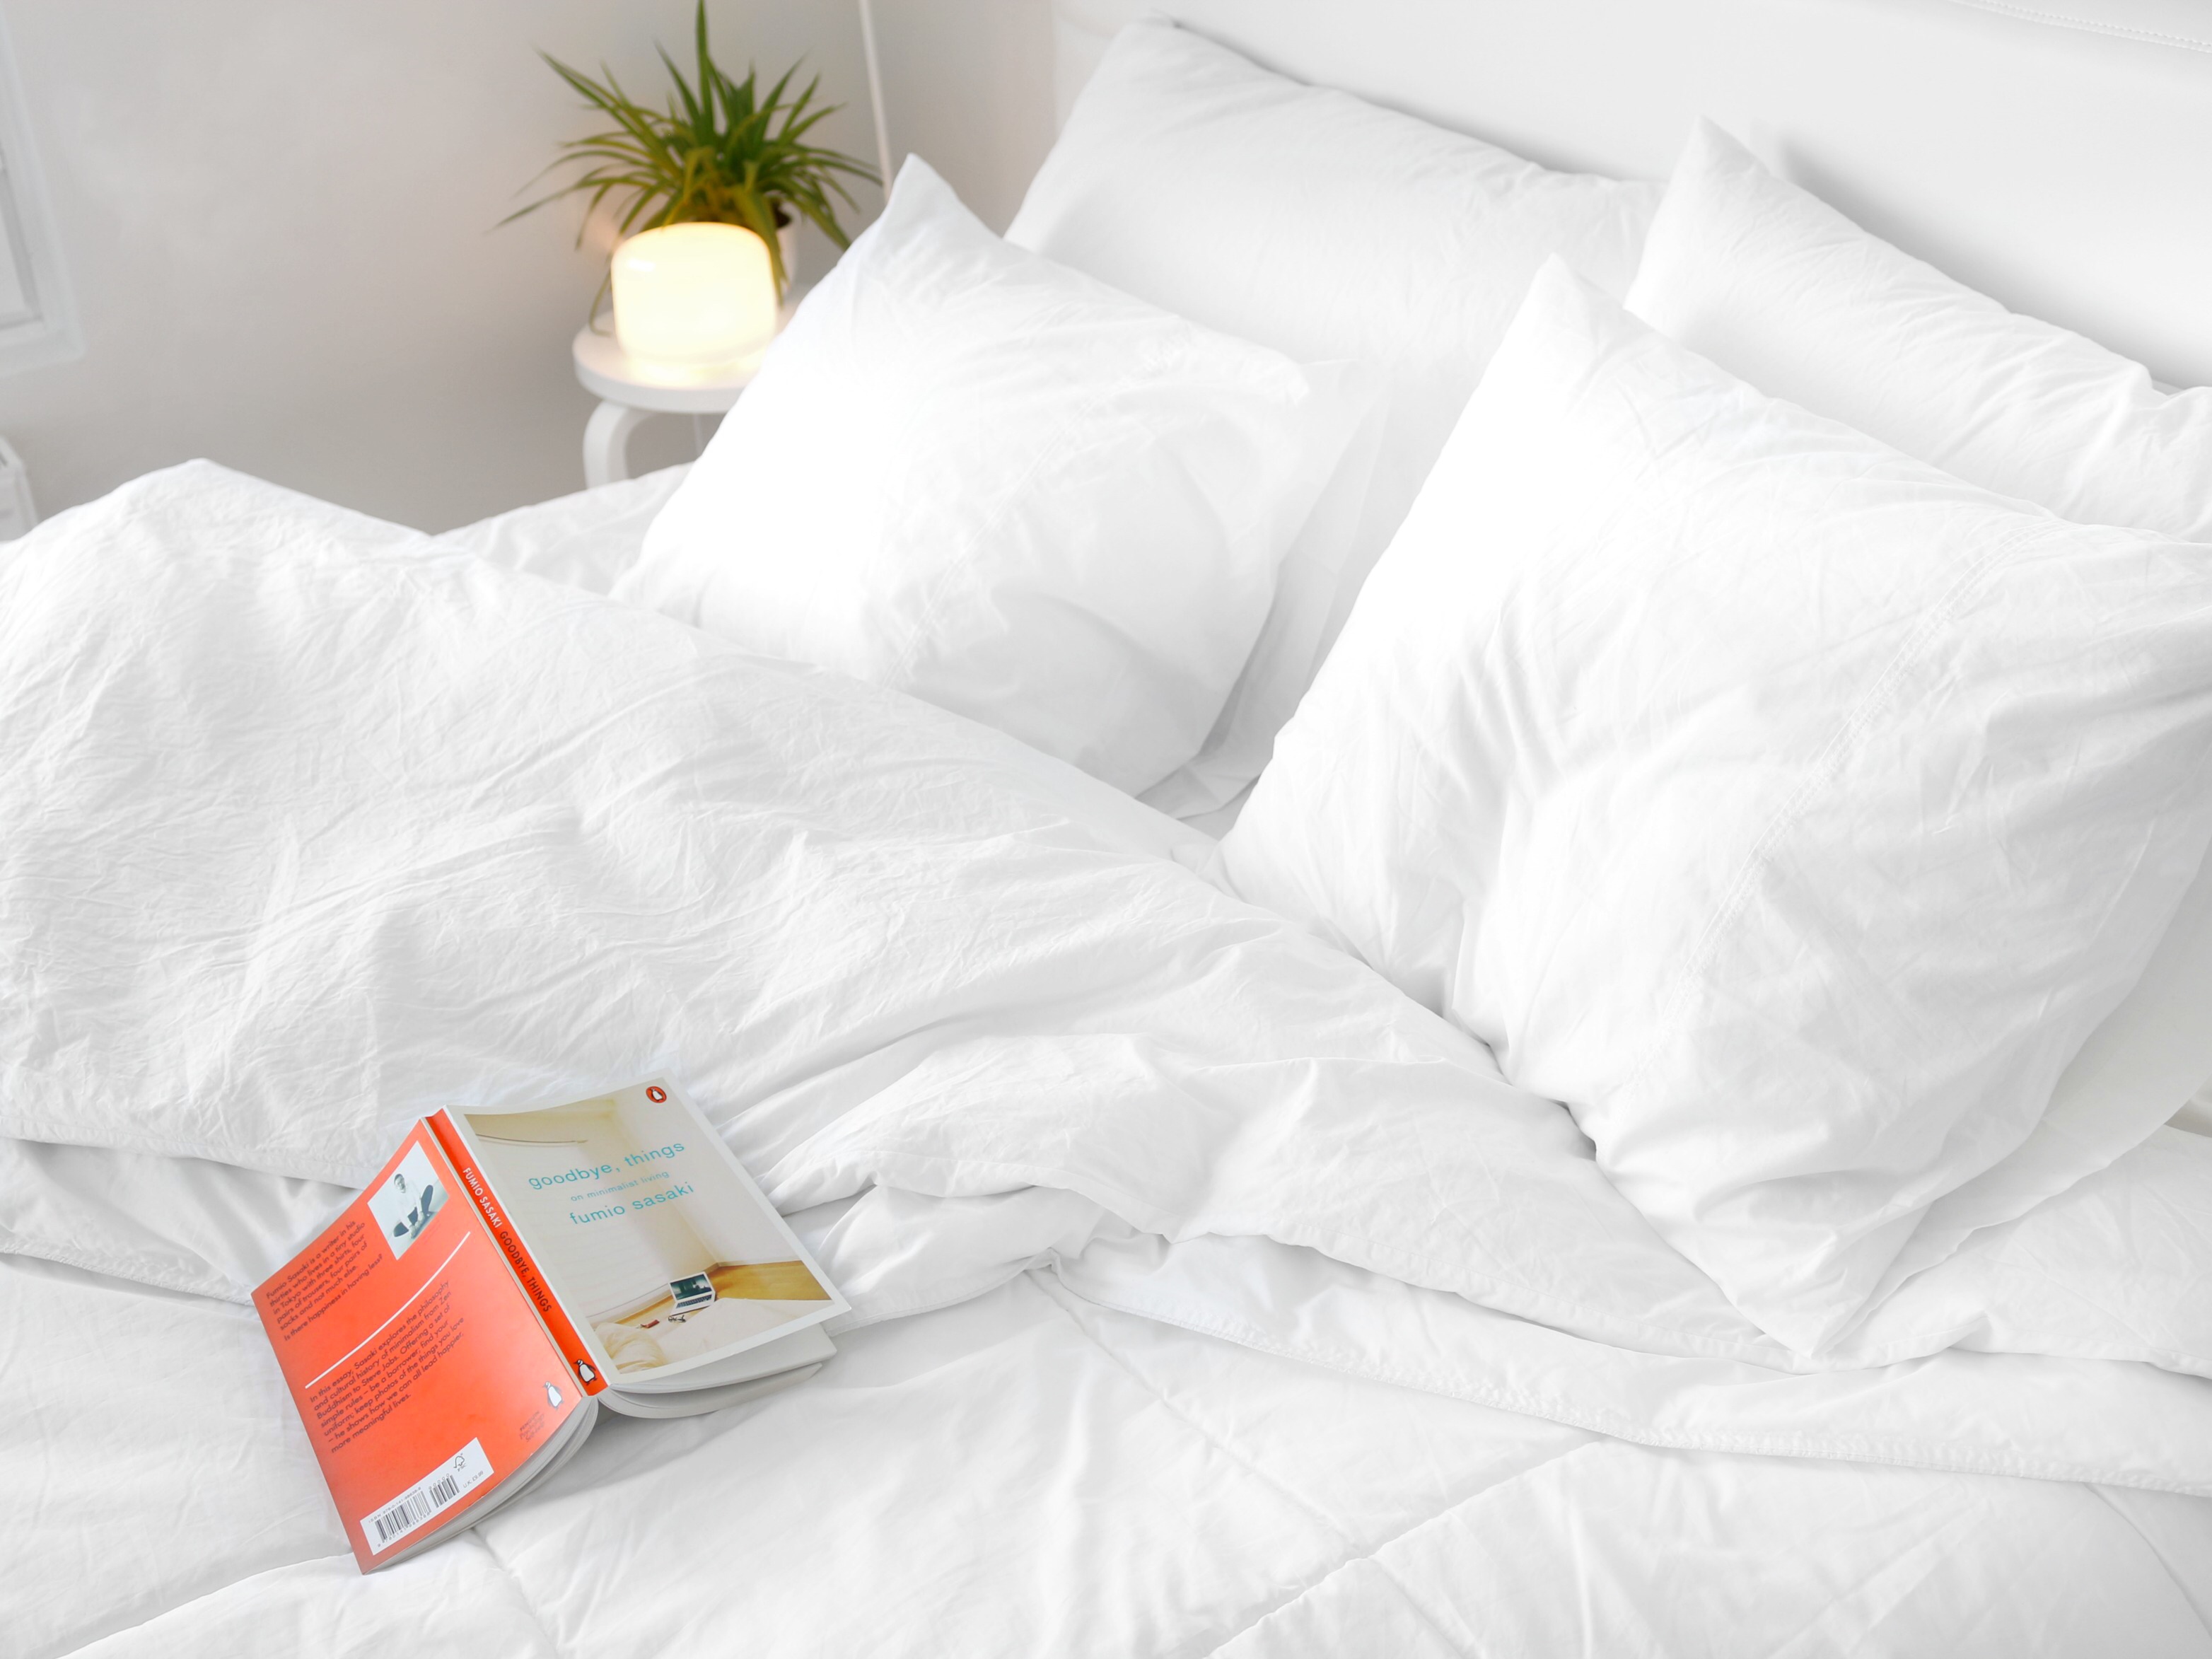 Fumio Sasaki Goodbye things kirja ja minimalistinen makuuhuone